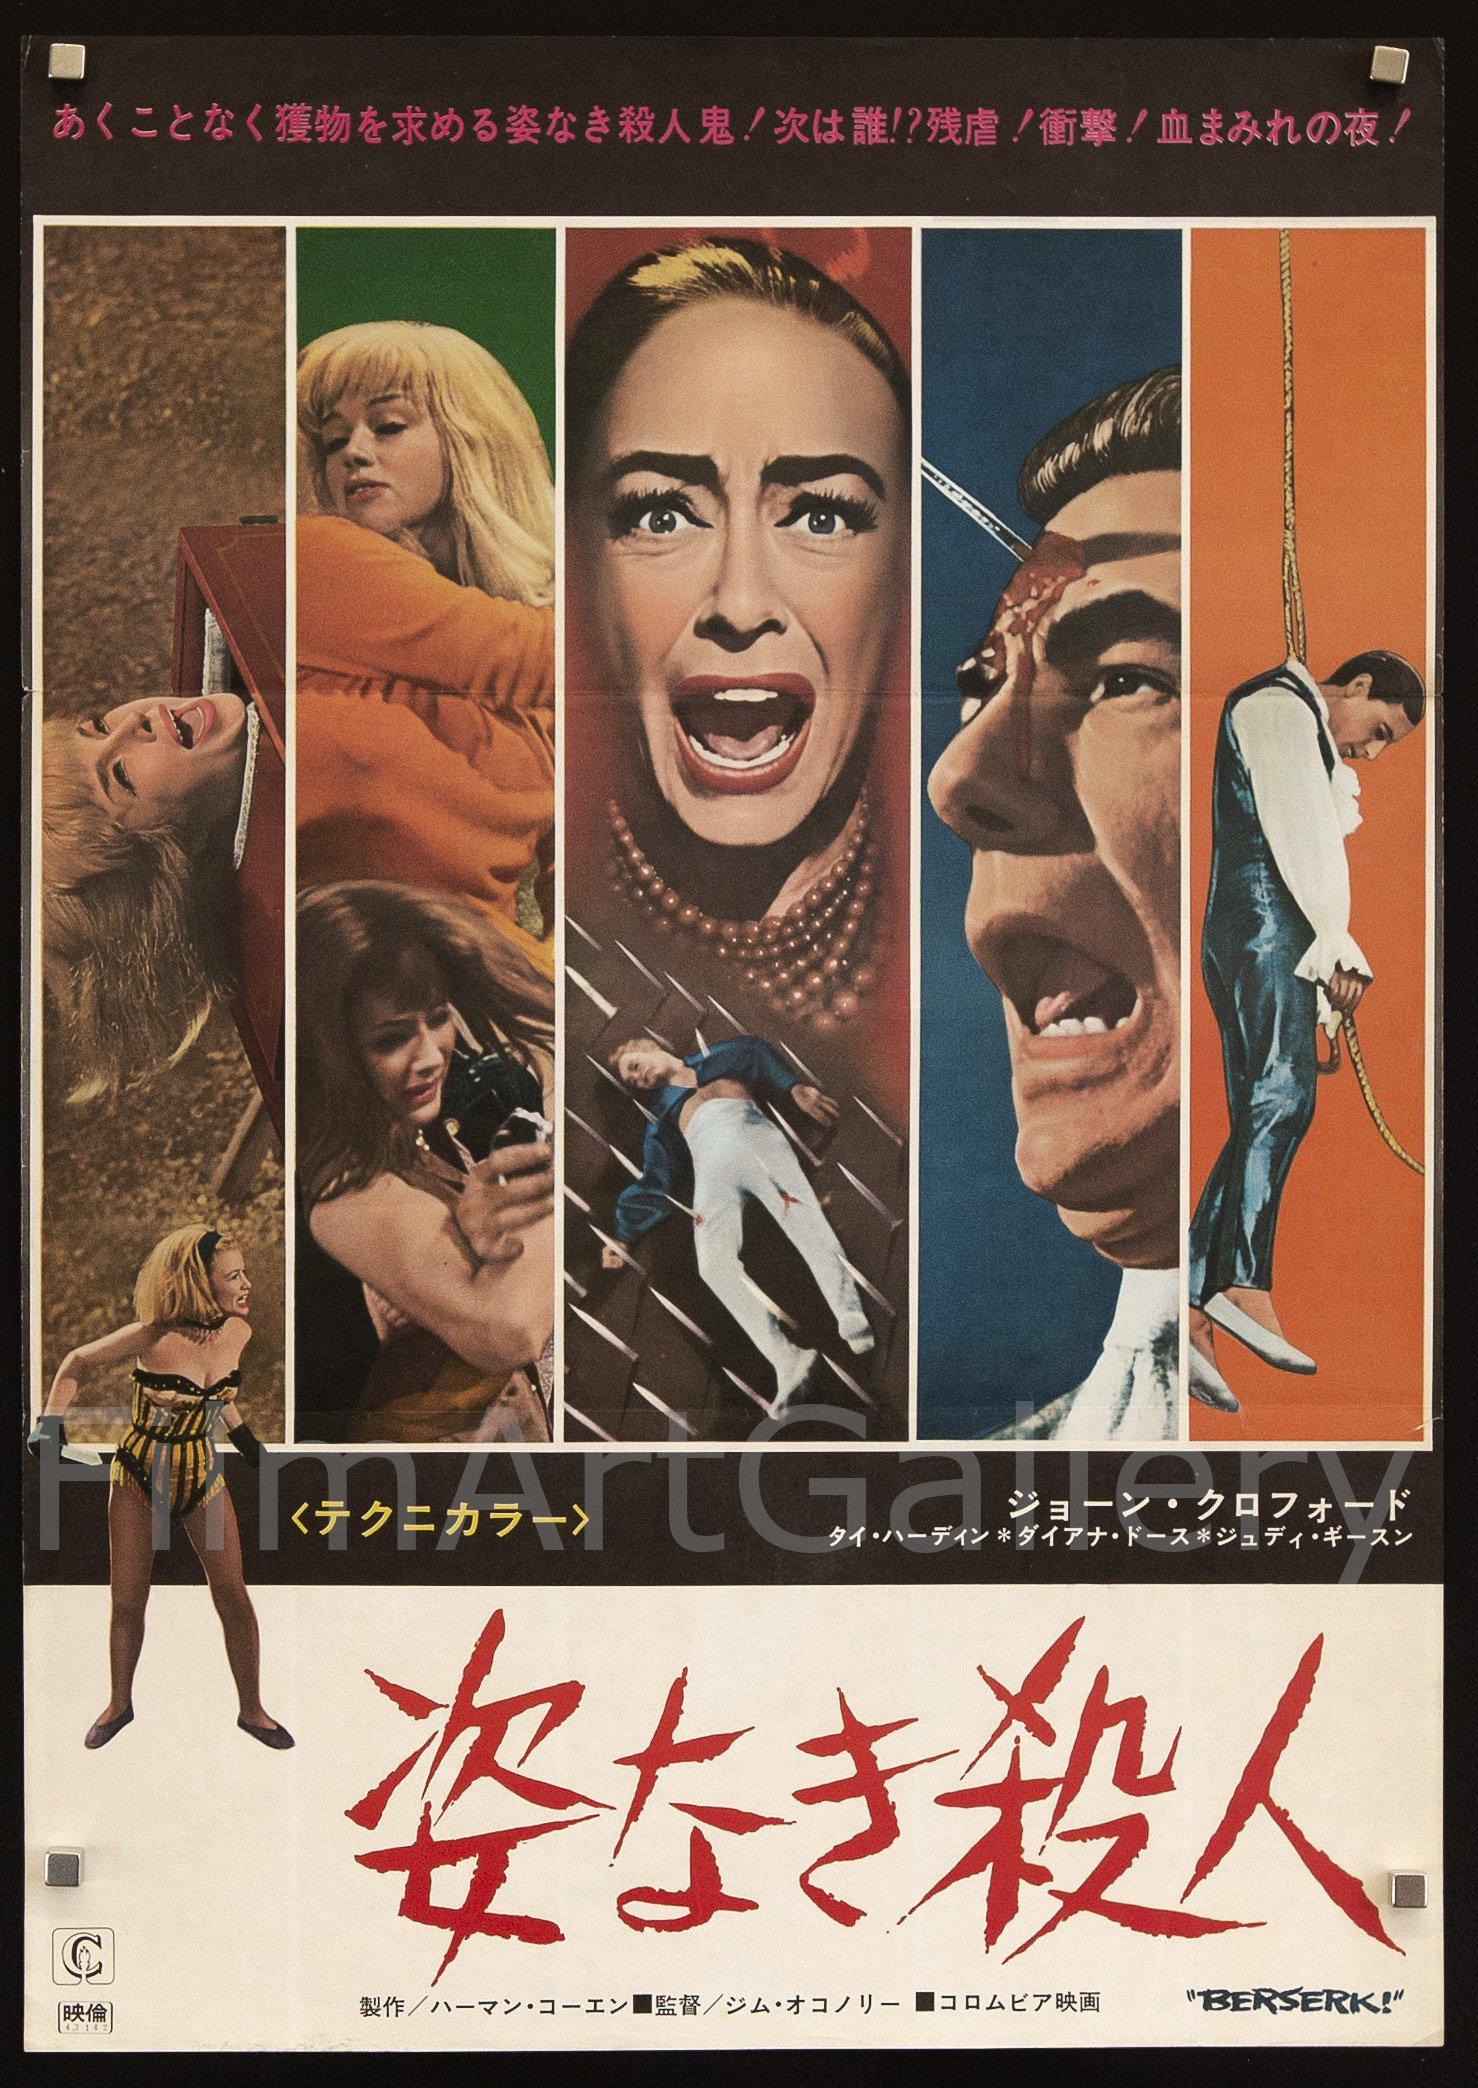 http://filmartgallery.com/cdn/shop/products/berserk-vintage-movie-poster-original-japanese-1-panel-20x29.jpg?v=1619039028